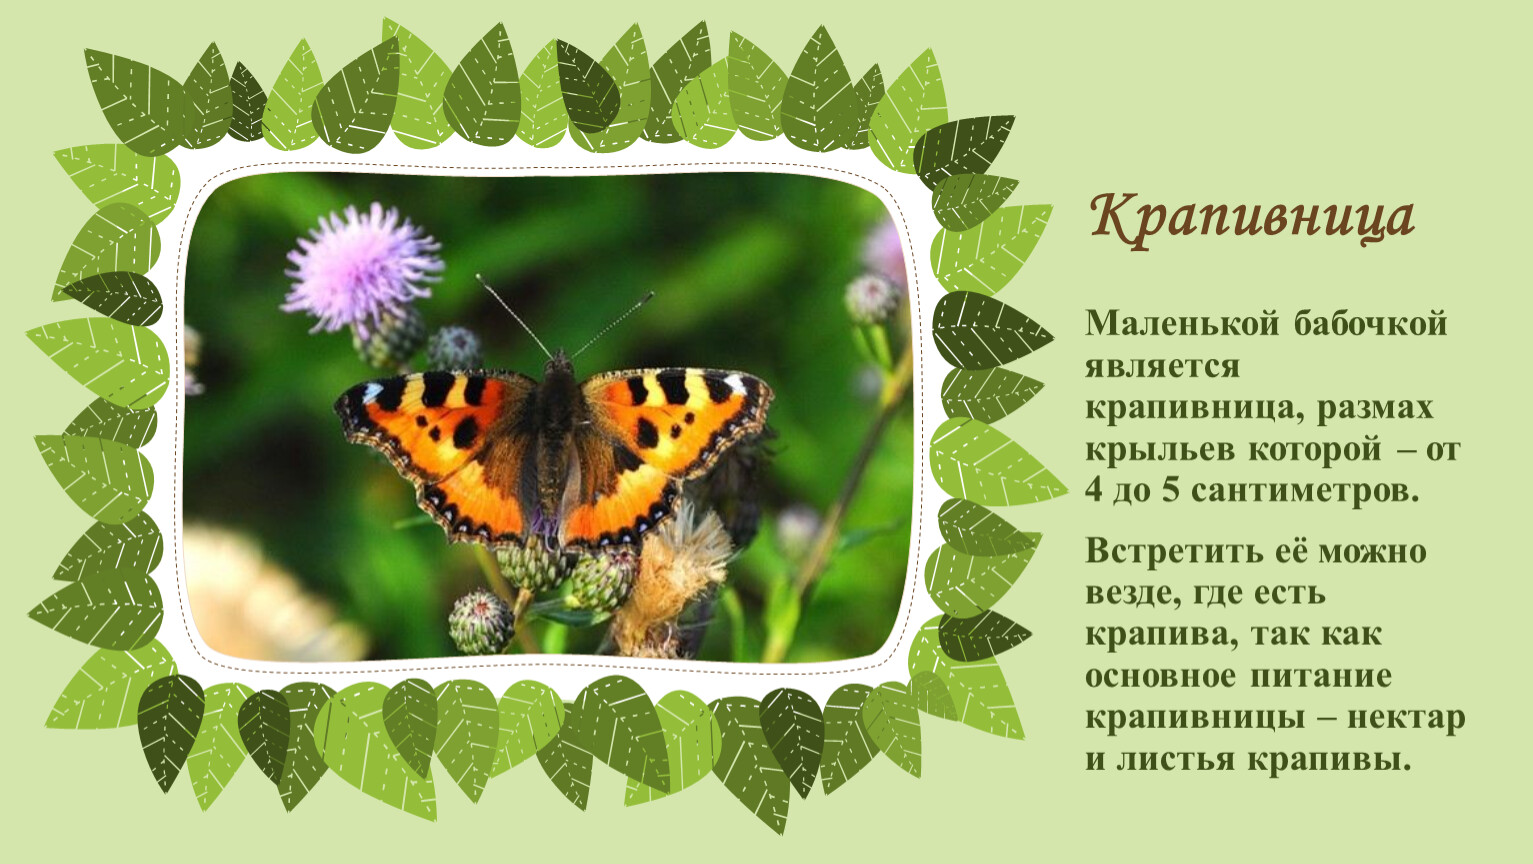 Сделайте описание бабочки крапивницы